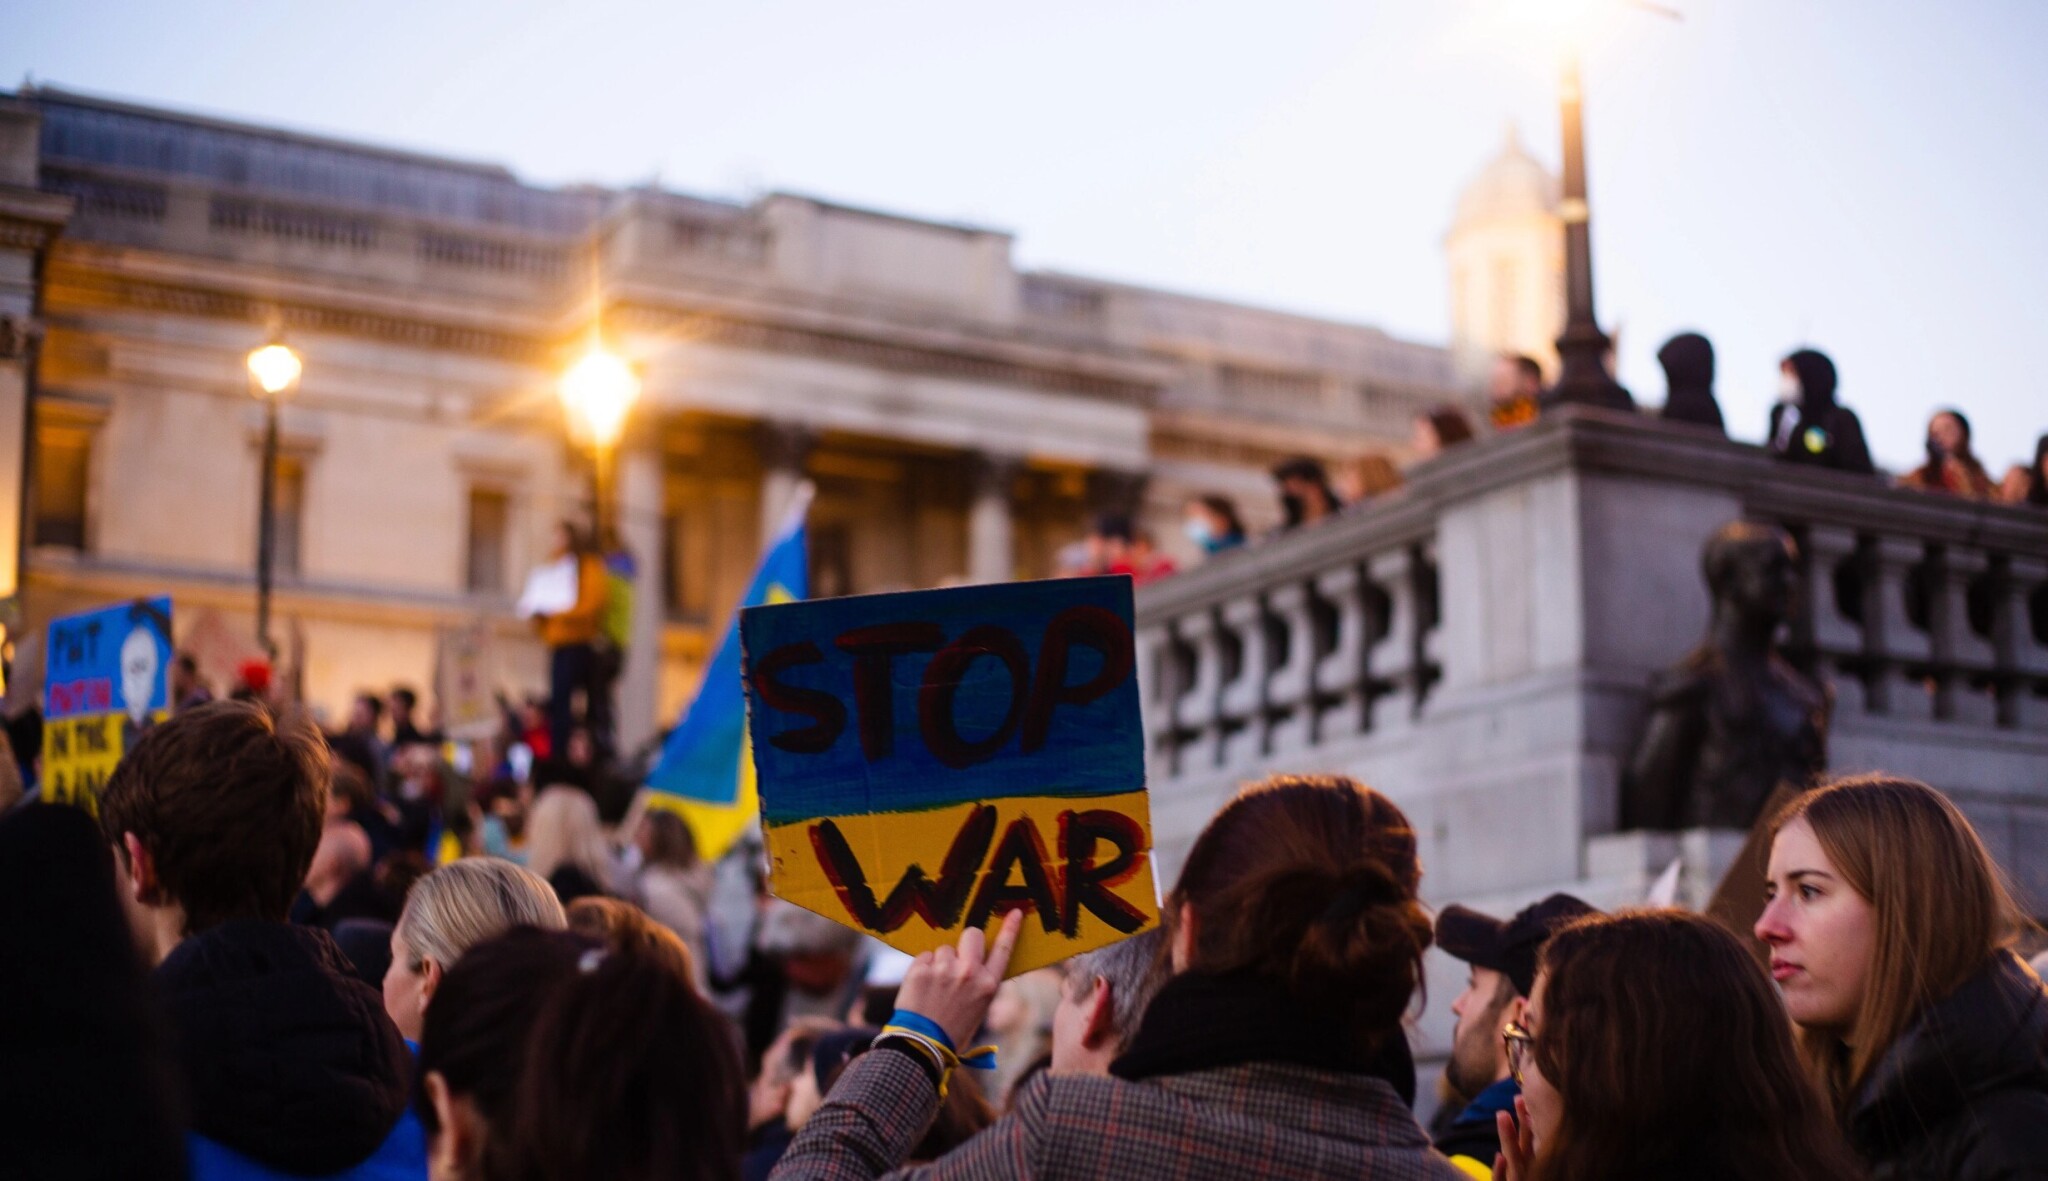 Válka na Ukrajině. Co nového v konfliktu přinesl uplynulý týden?